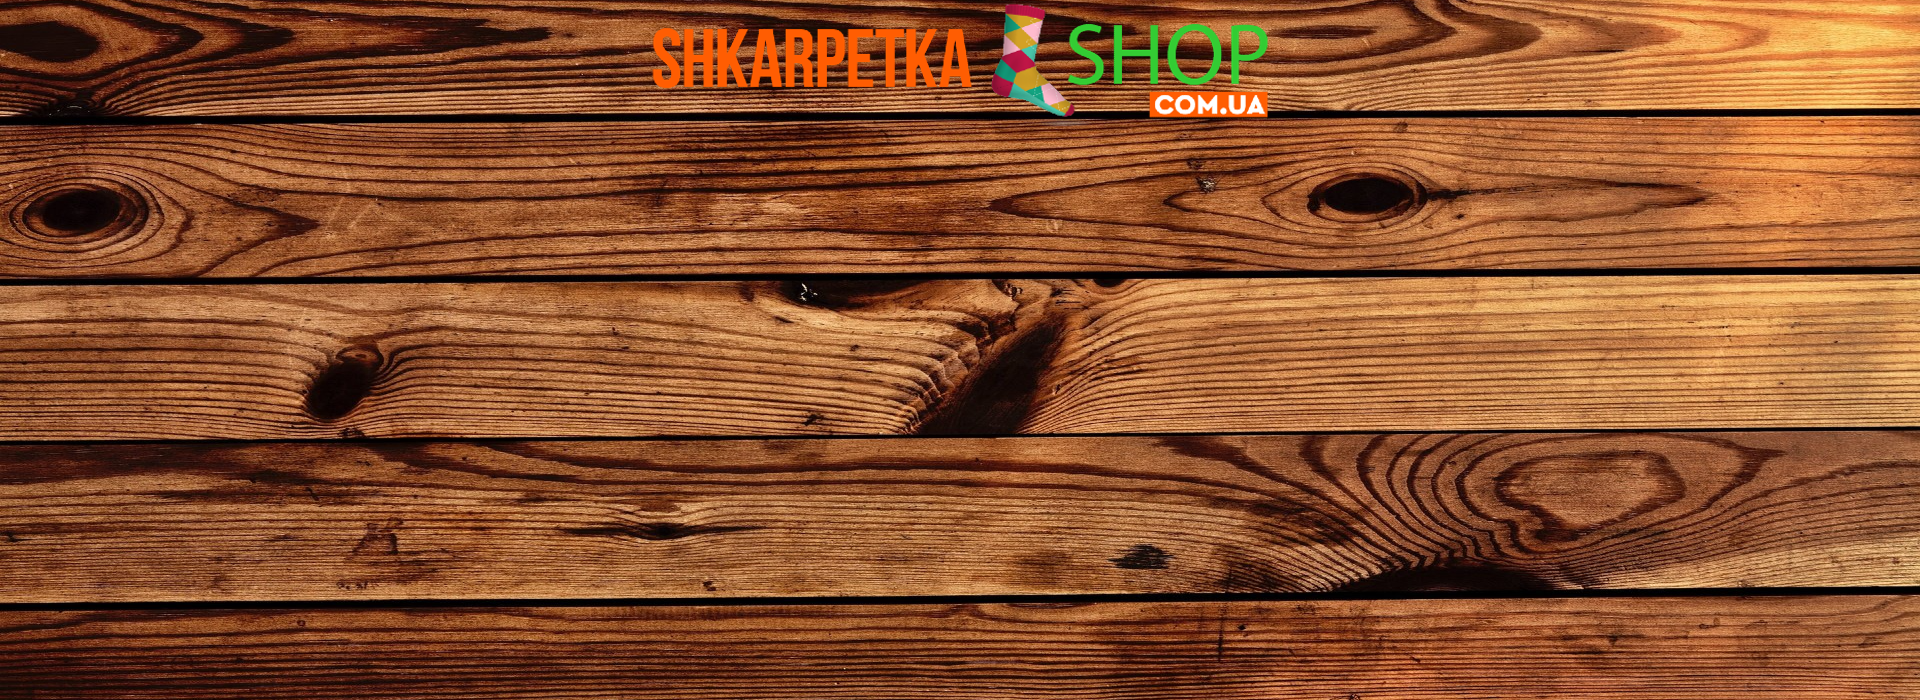 Shkarpetkashop.com.ua